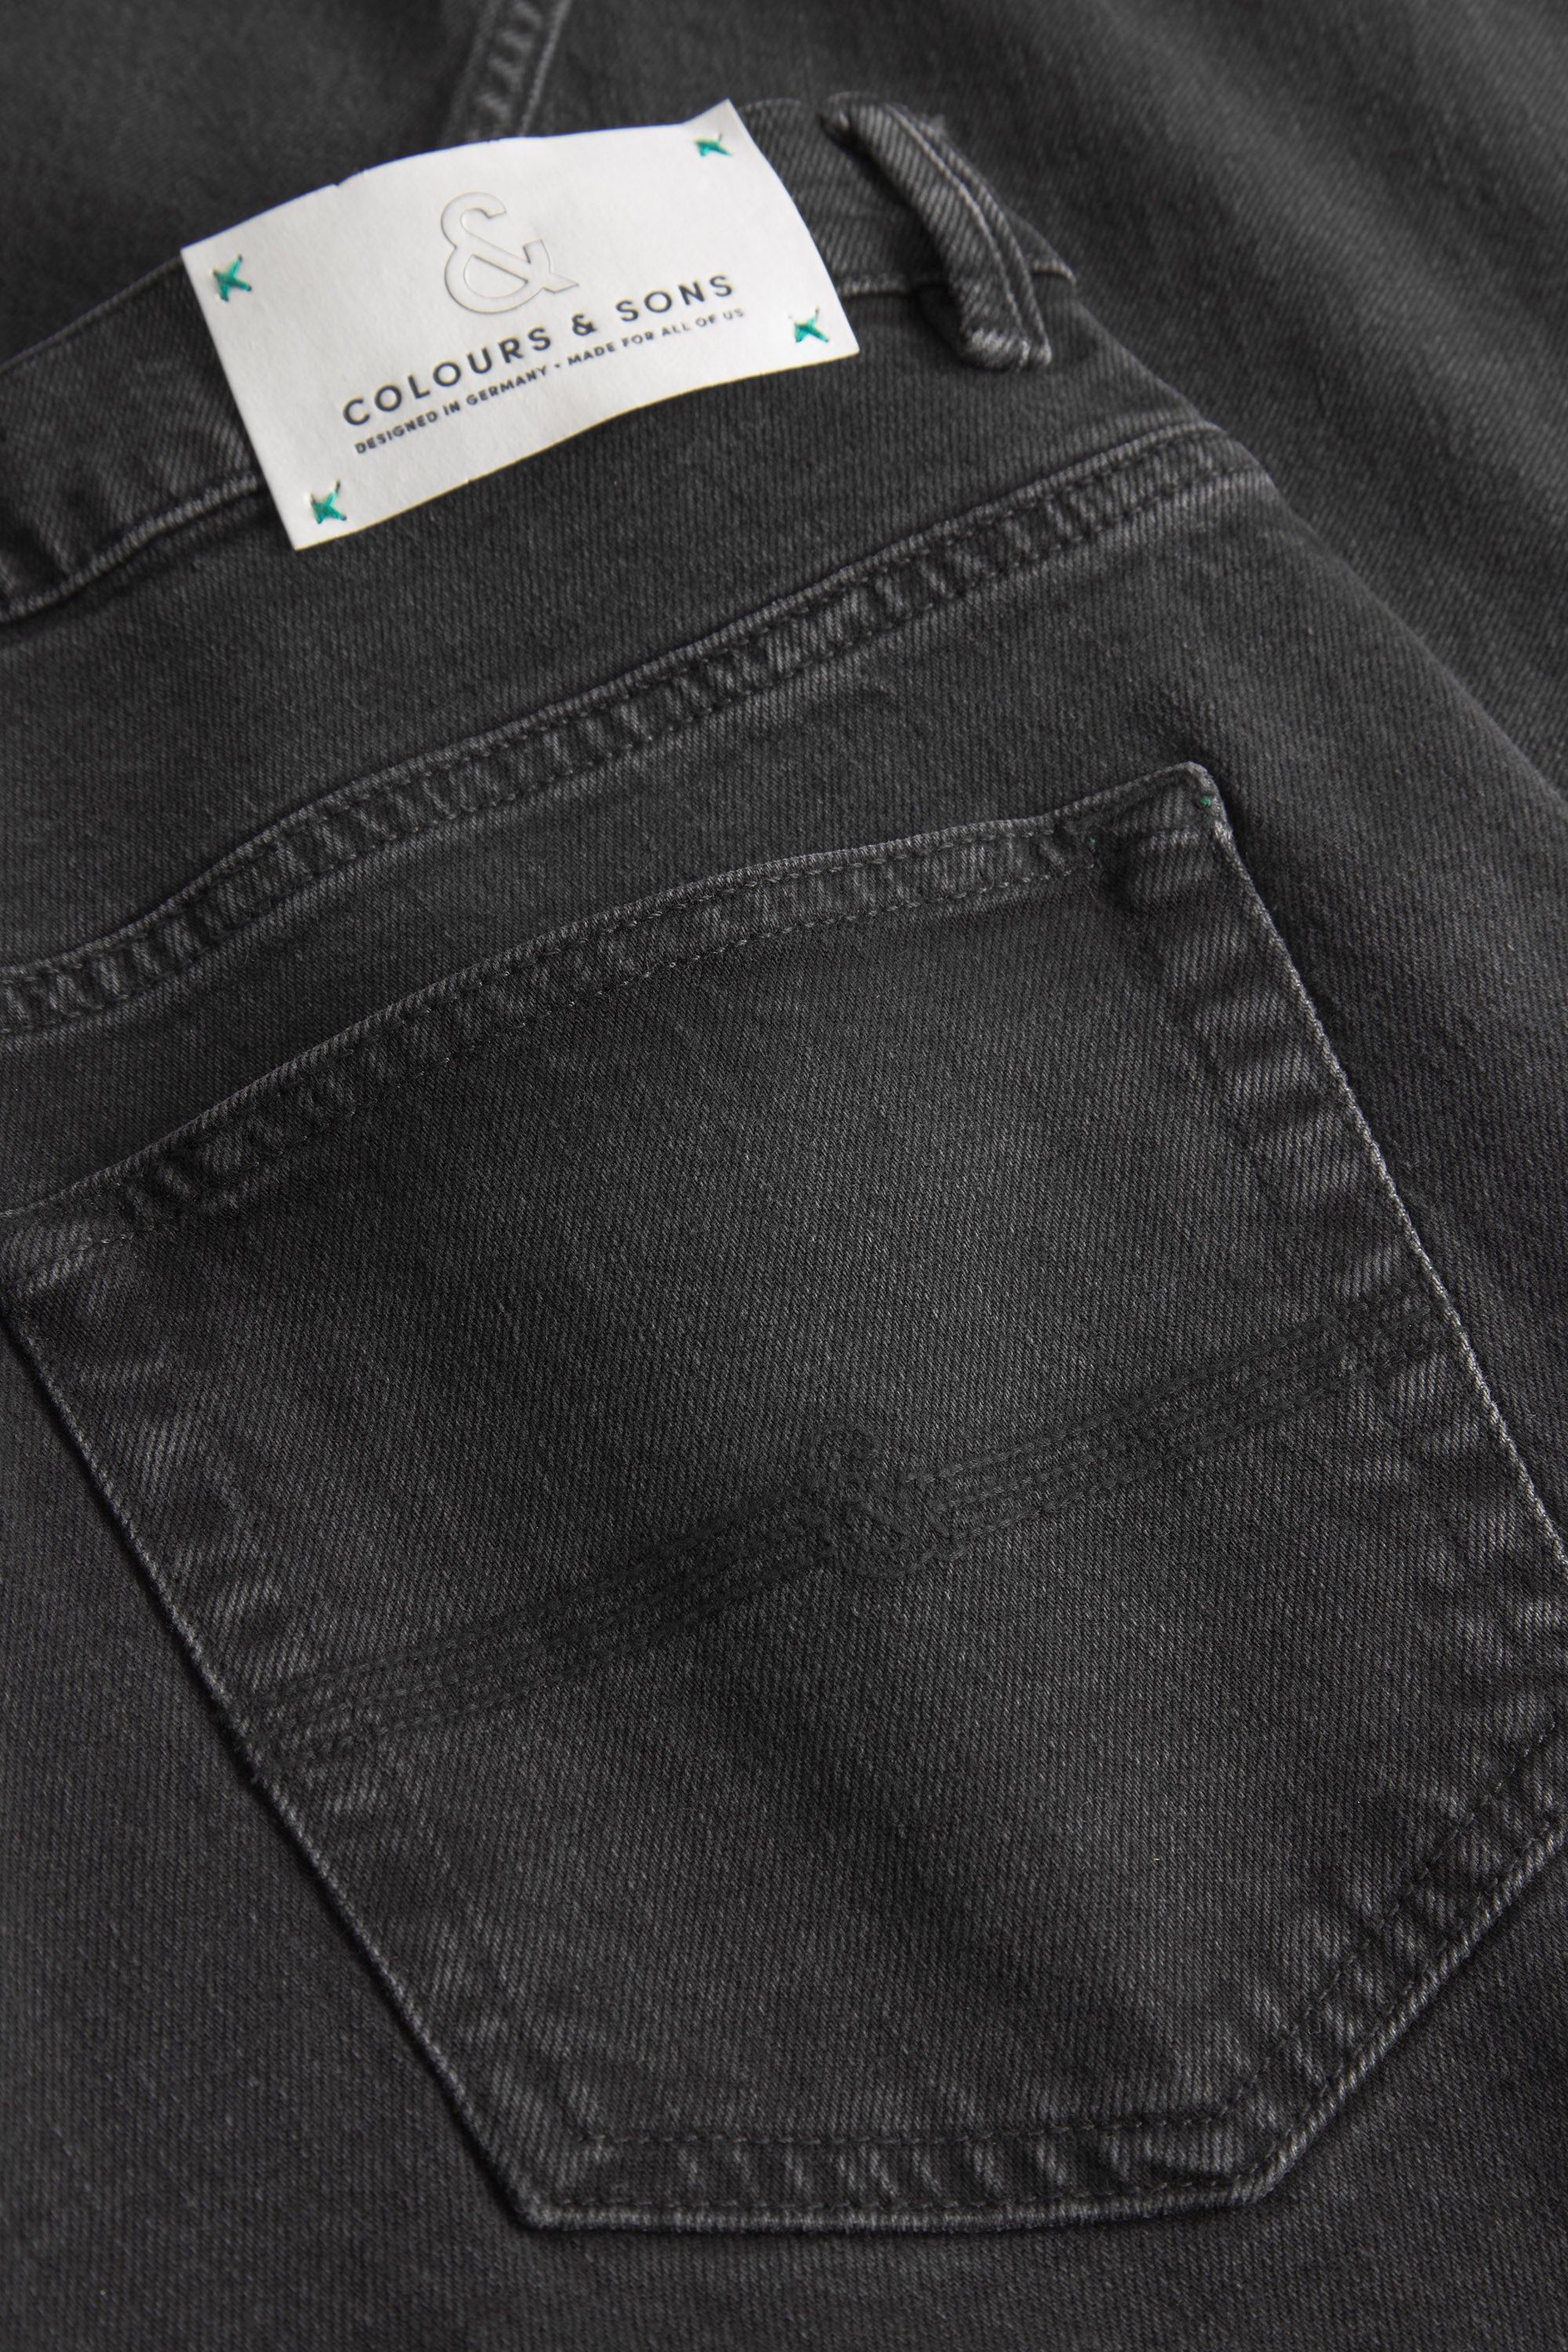 Herren Jeans, anthra, 77% Baumwolle 22% recycled Baumwolle 1% Elastan von Colours & Sons